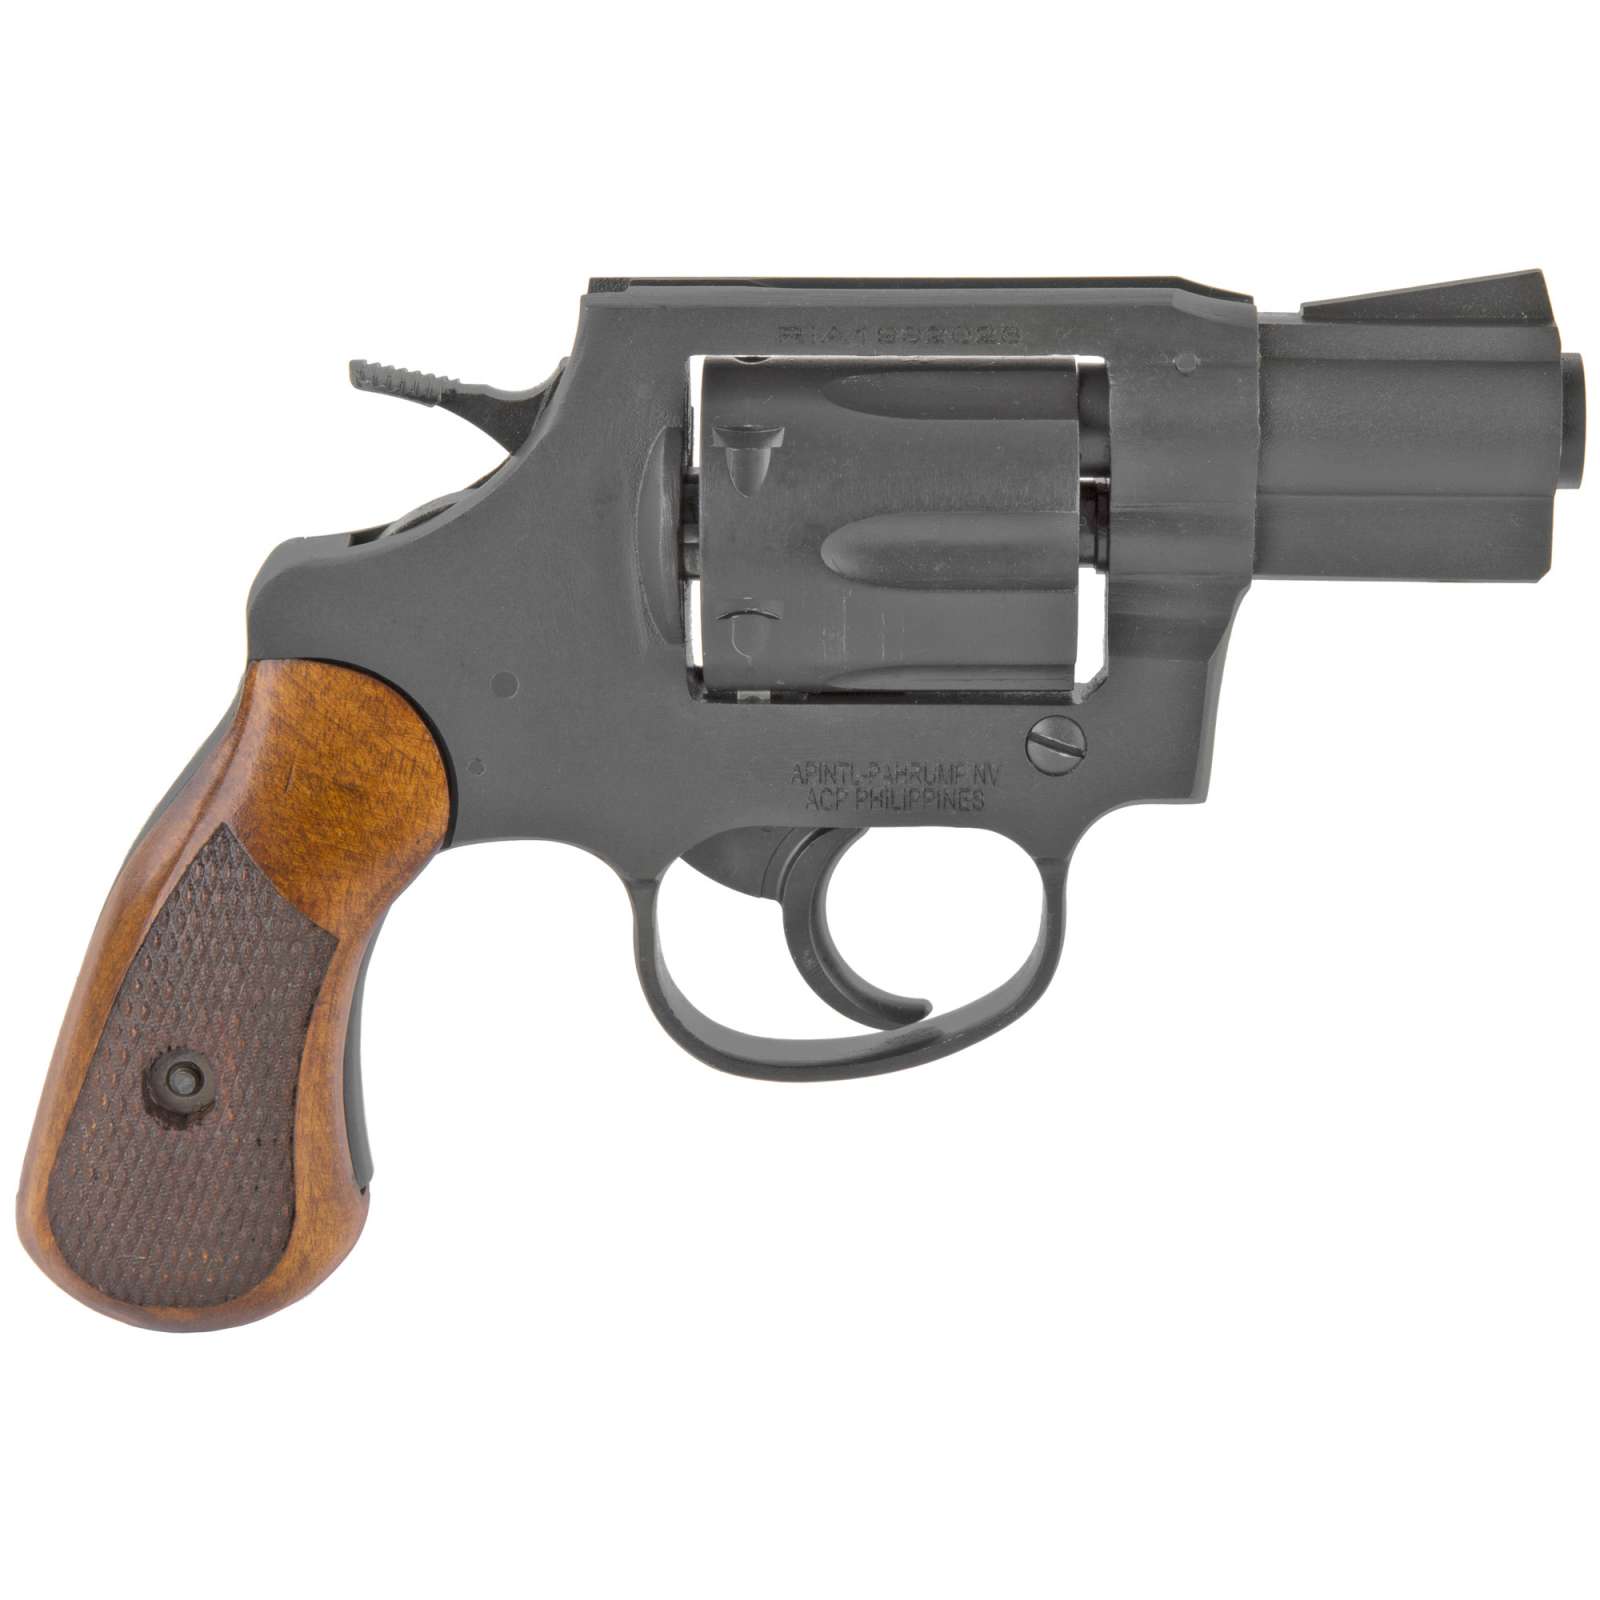 Rock Island 51283 Revolver M206 Ca Compliant Singledouble 38 Special 2 Semi Auto Pistols 3898